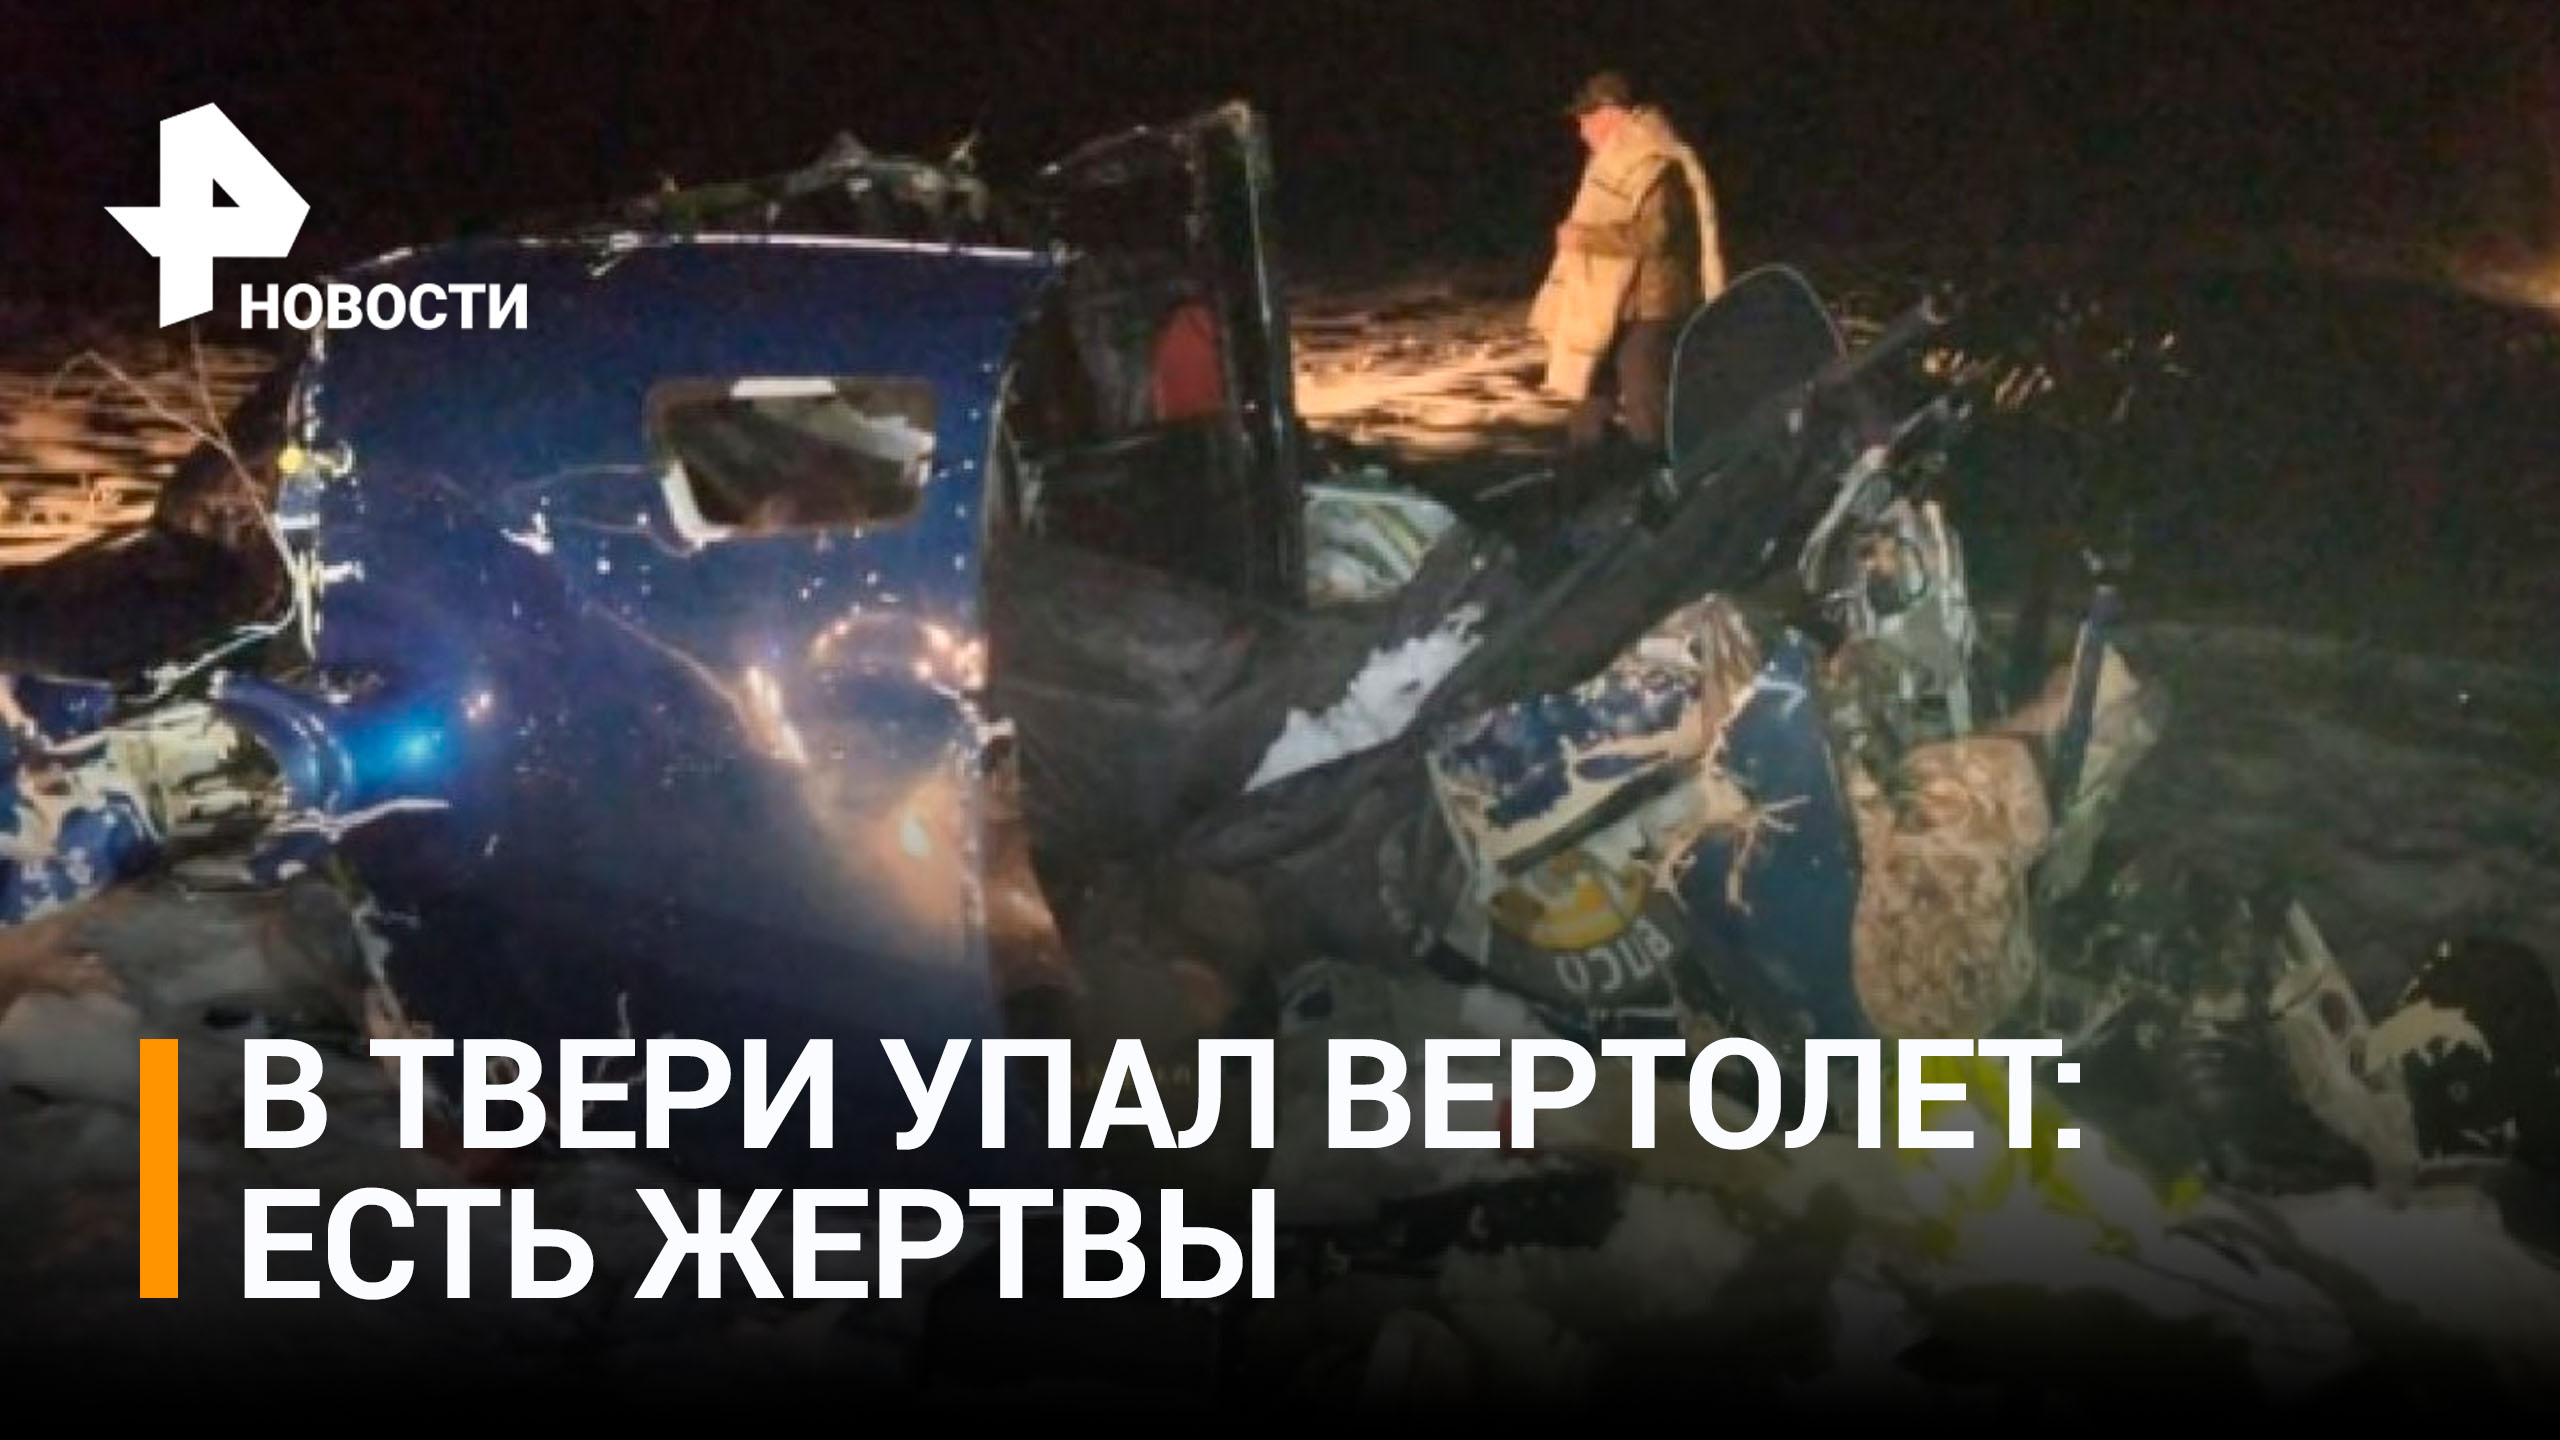 Мастер спорта и его брат погибли в результате крушения вертолета в Тверской области / РЕН Новости